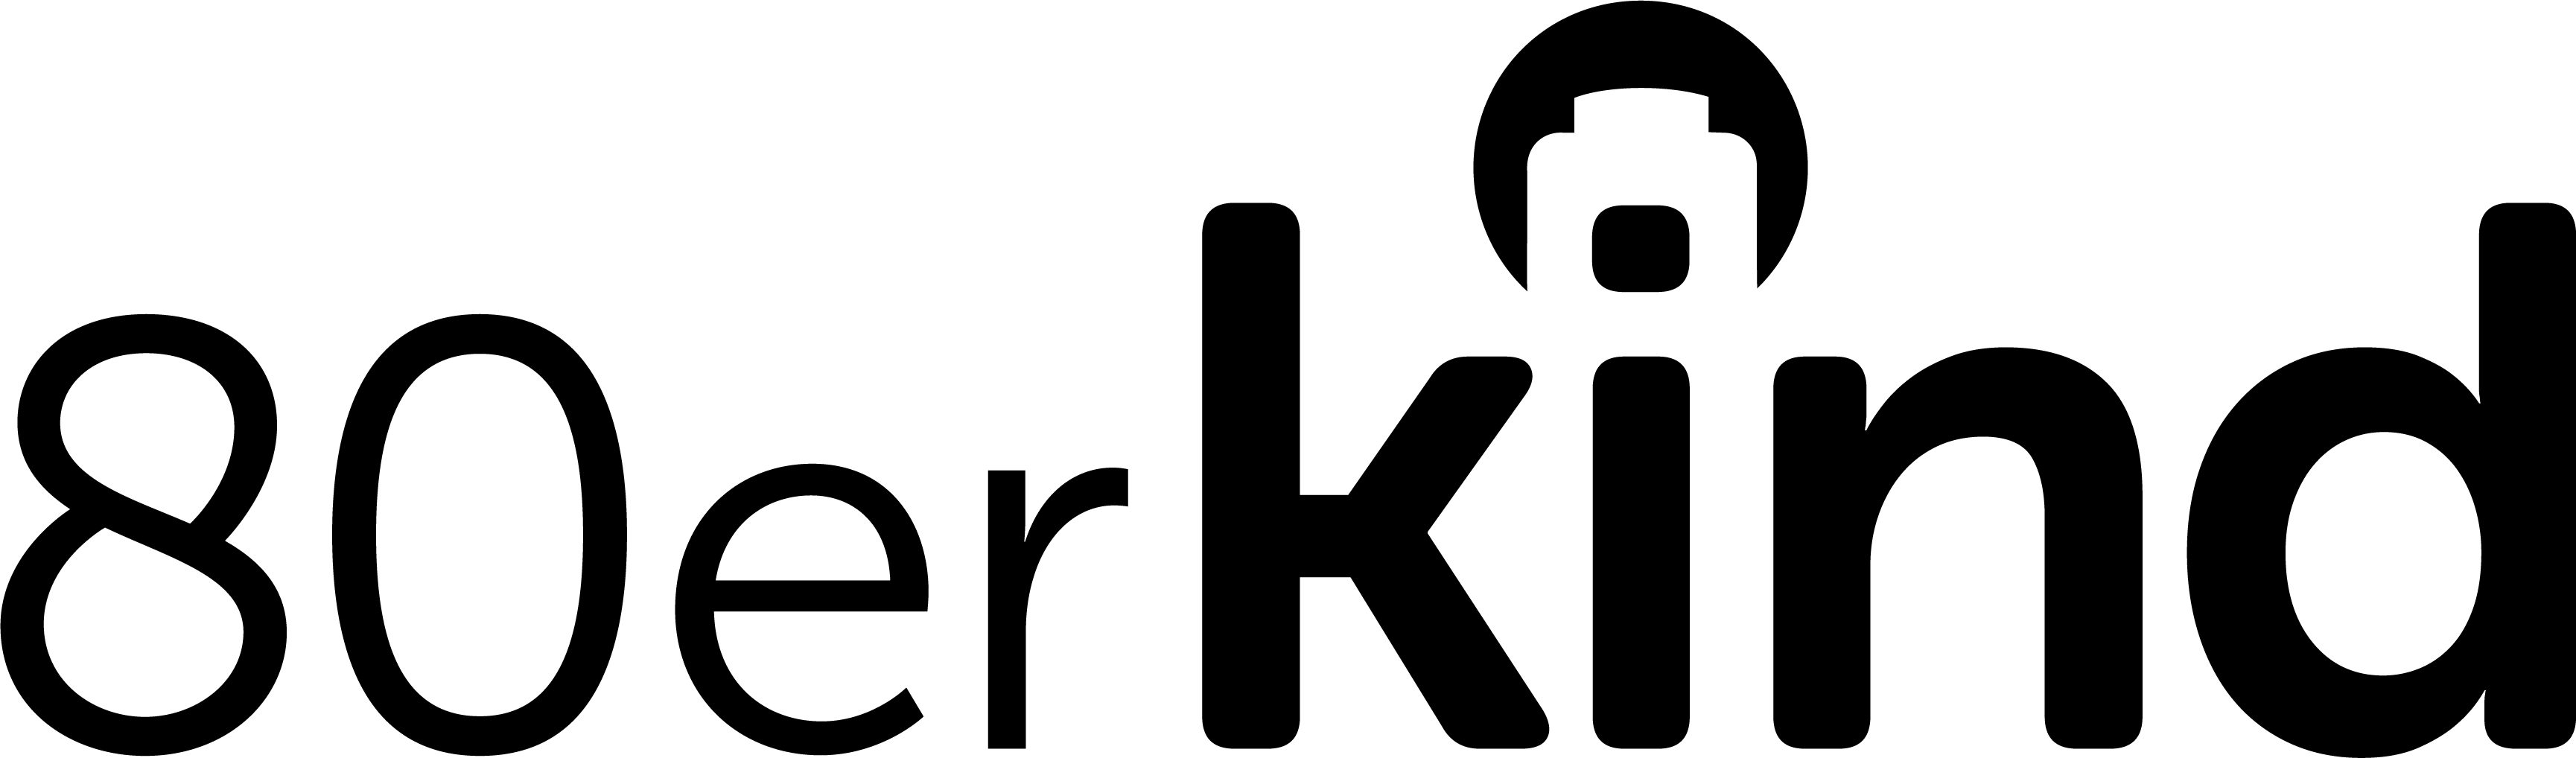 80erKind-Logo